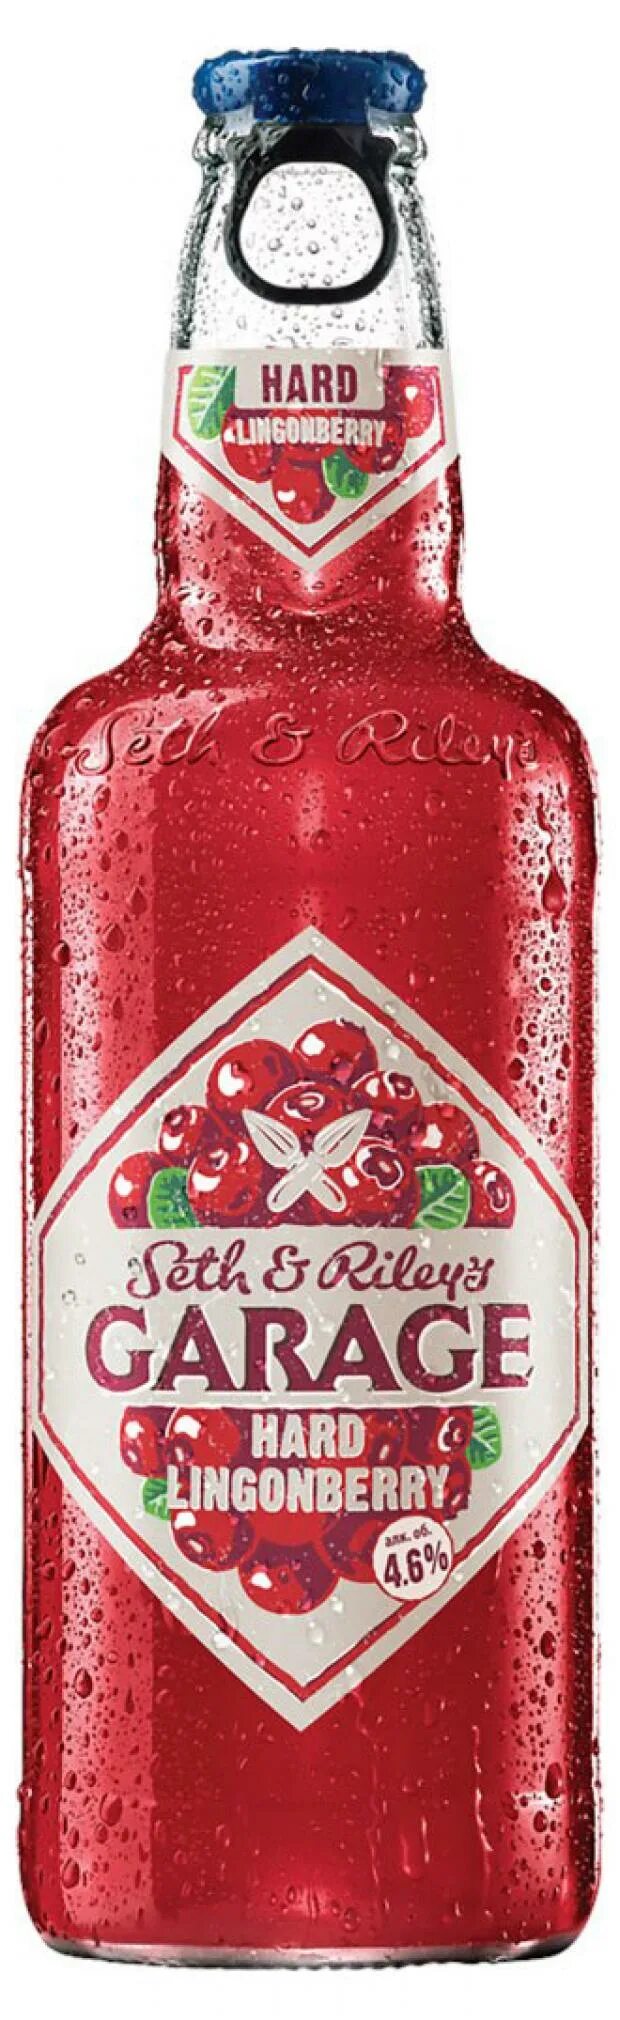 Seth riley garage. Пивной напиток сет энд Райлис гараж. Пивной напиток Garage Seth & Riley’s Lingonberry 0.44 л. Сет энд Райлис гараж Хард 0,44л. Напиток "сет энд Райлис гараж Хард брусника.